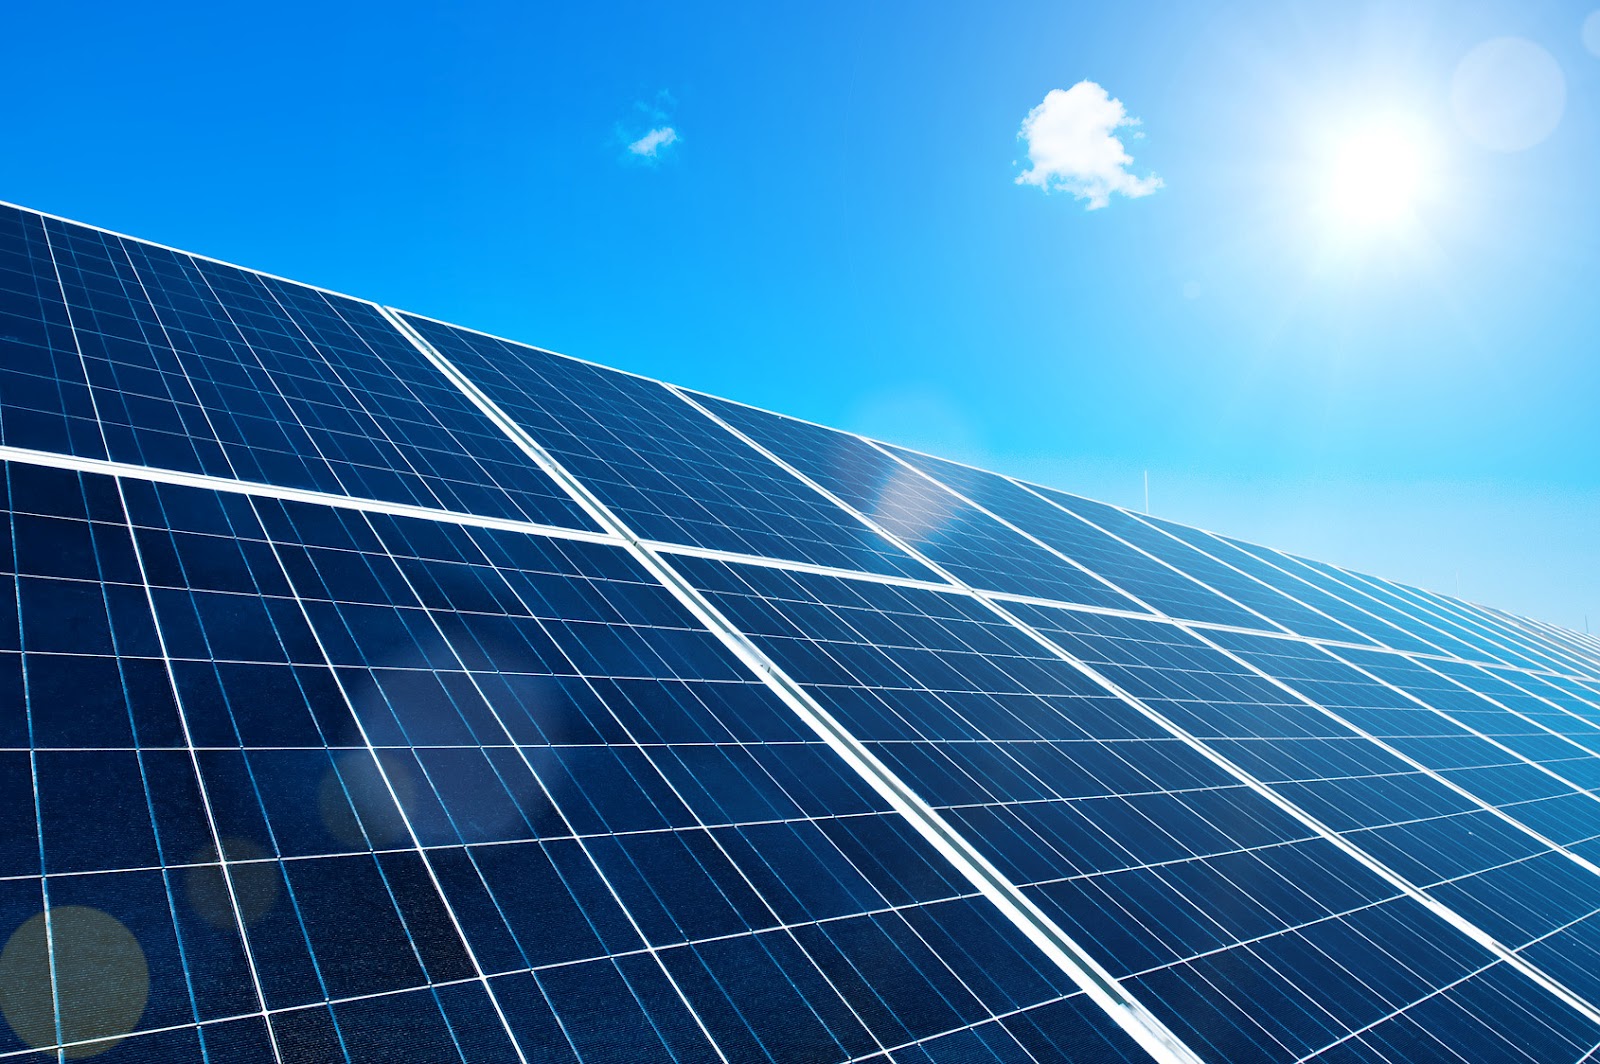 solar-panel-photovoltaic-energy-from-sun-khoirulpage